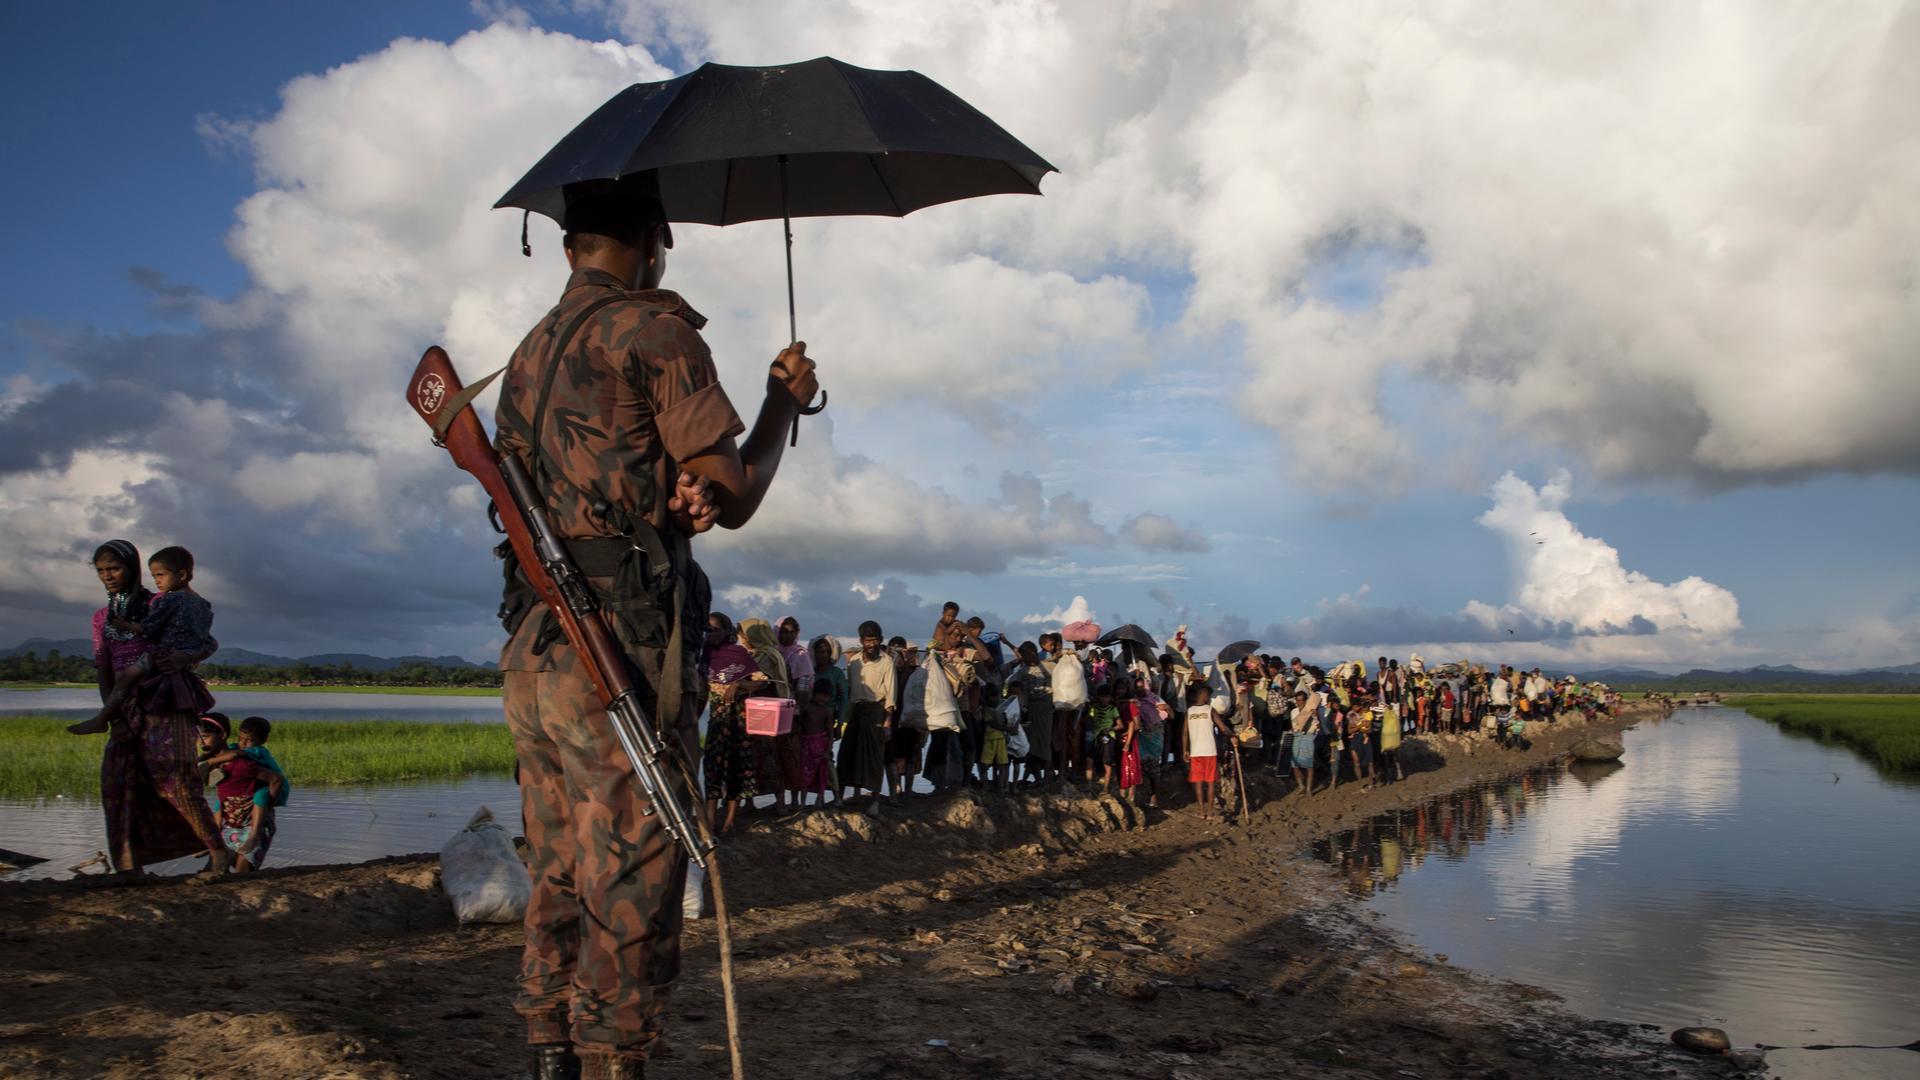 Ein Wächter aus Bangladesch mit geschultertem Gewehr steht unter einem Sonnenschirm während Tausende Rohingya-Flüchtlinge aus Myanmar an einem schlammigen Reisfeld entlanggehen.
